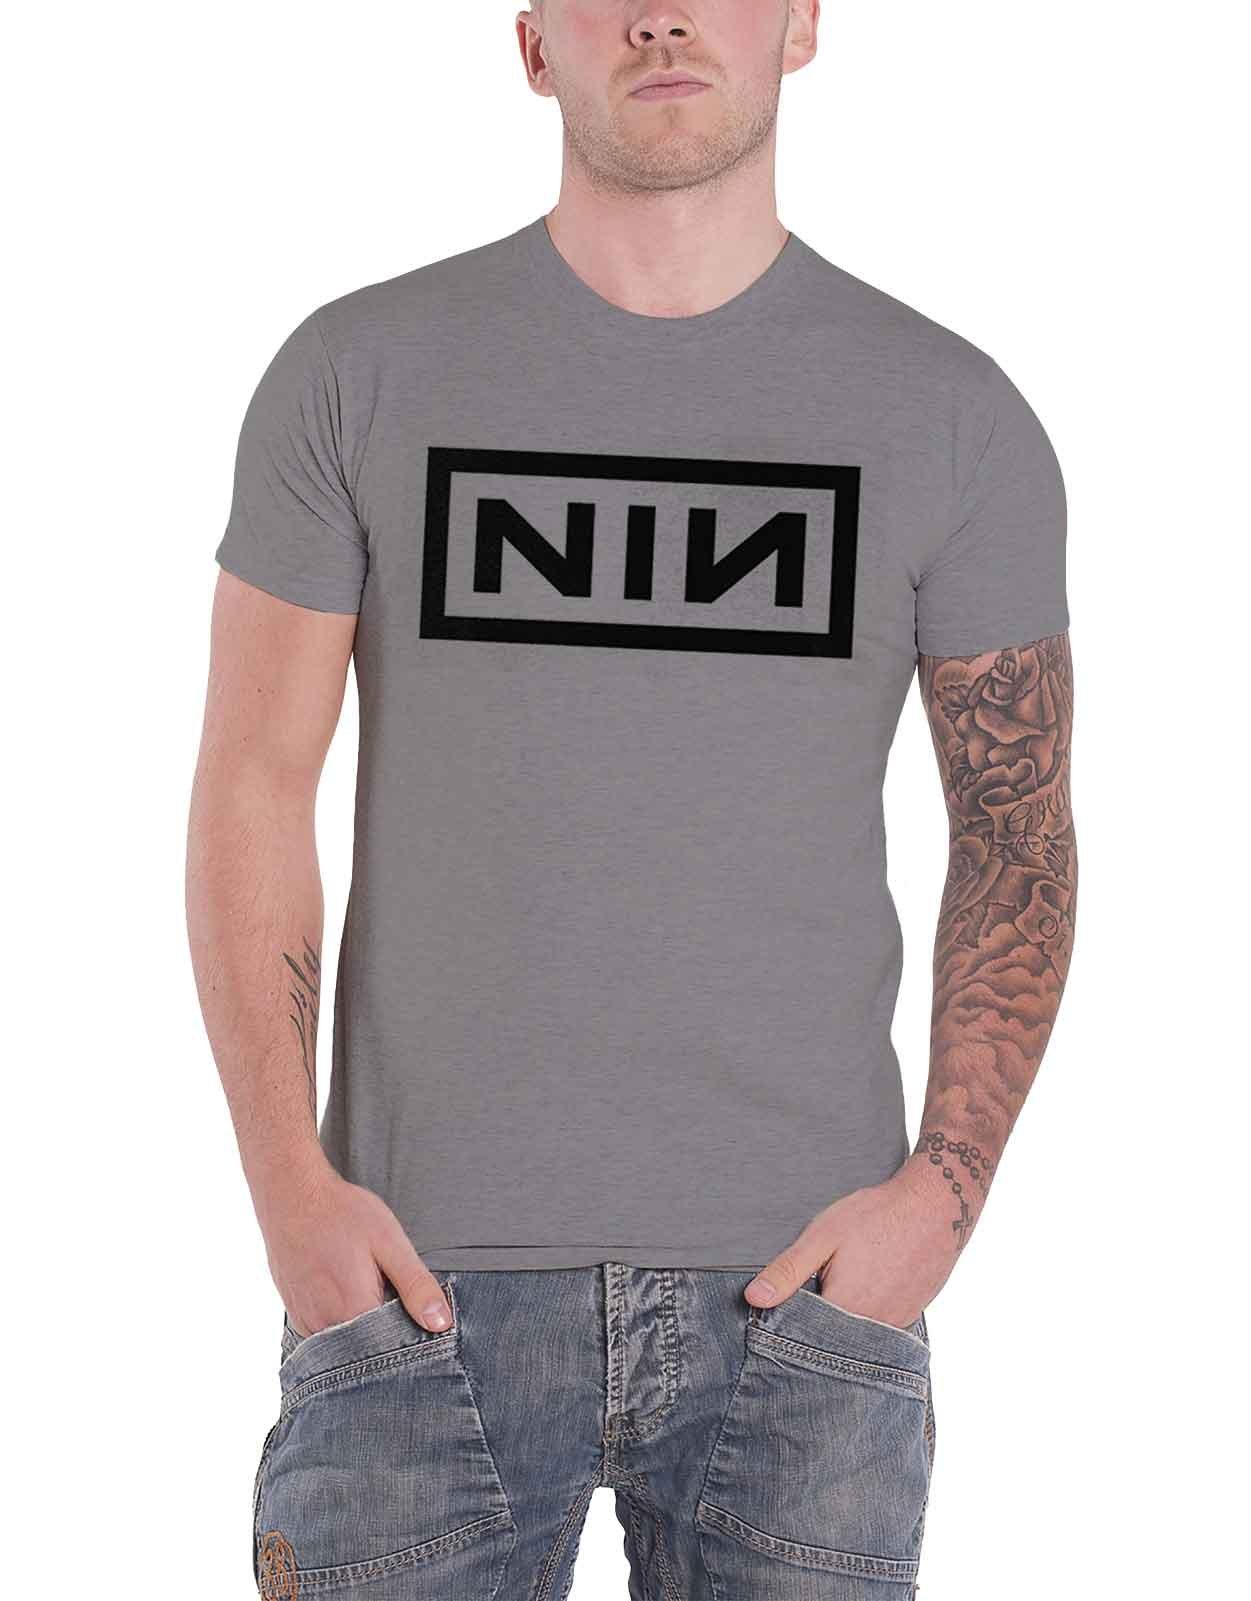 Футболка с логотипом группы Nine Inch Nails, серый новое поступление 2019 мужская футболка новая модная мужская футболка с принтом рок группы